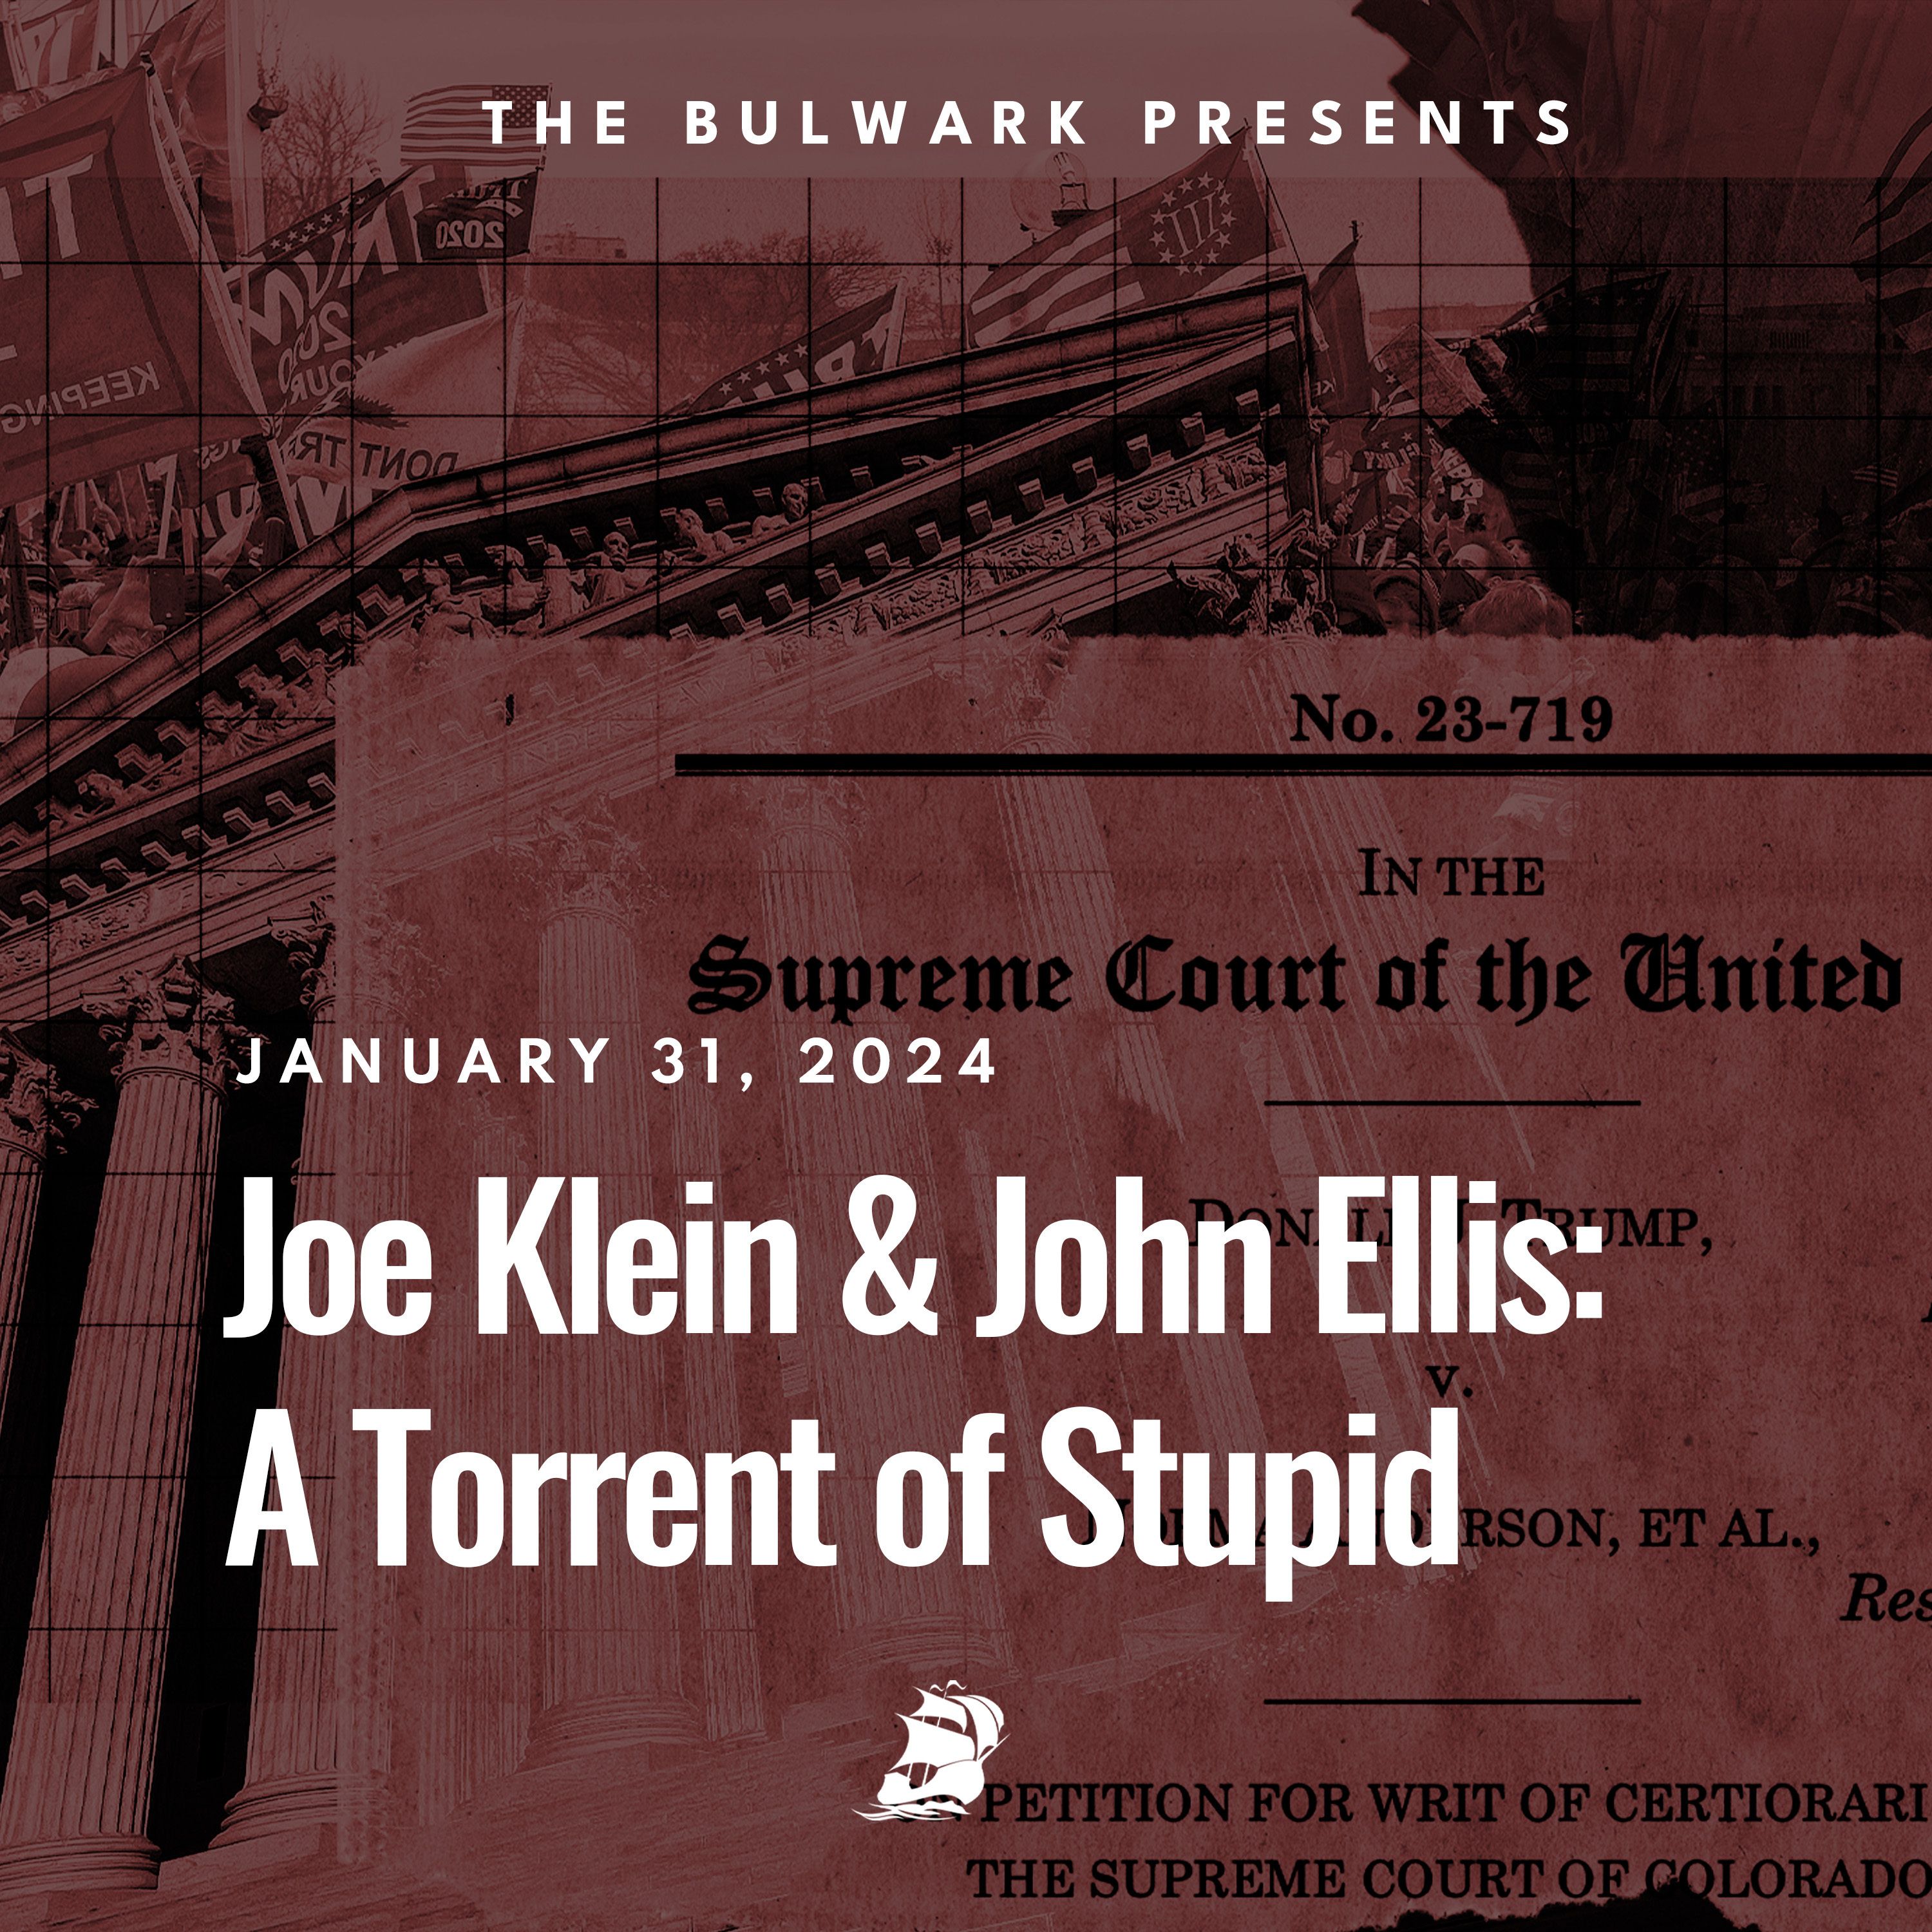 Joe Klein & John Ellis: A Torrent of Stupid